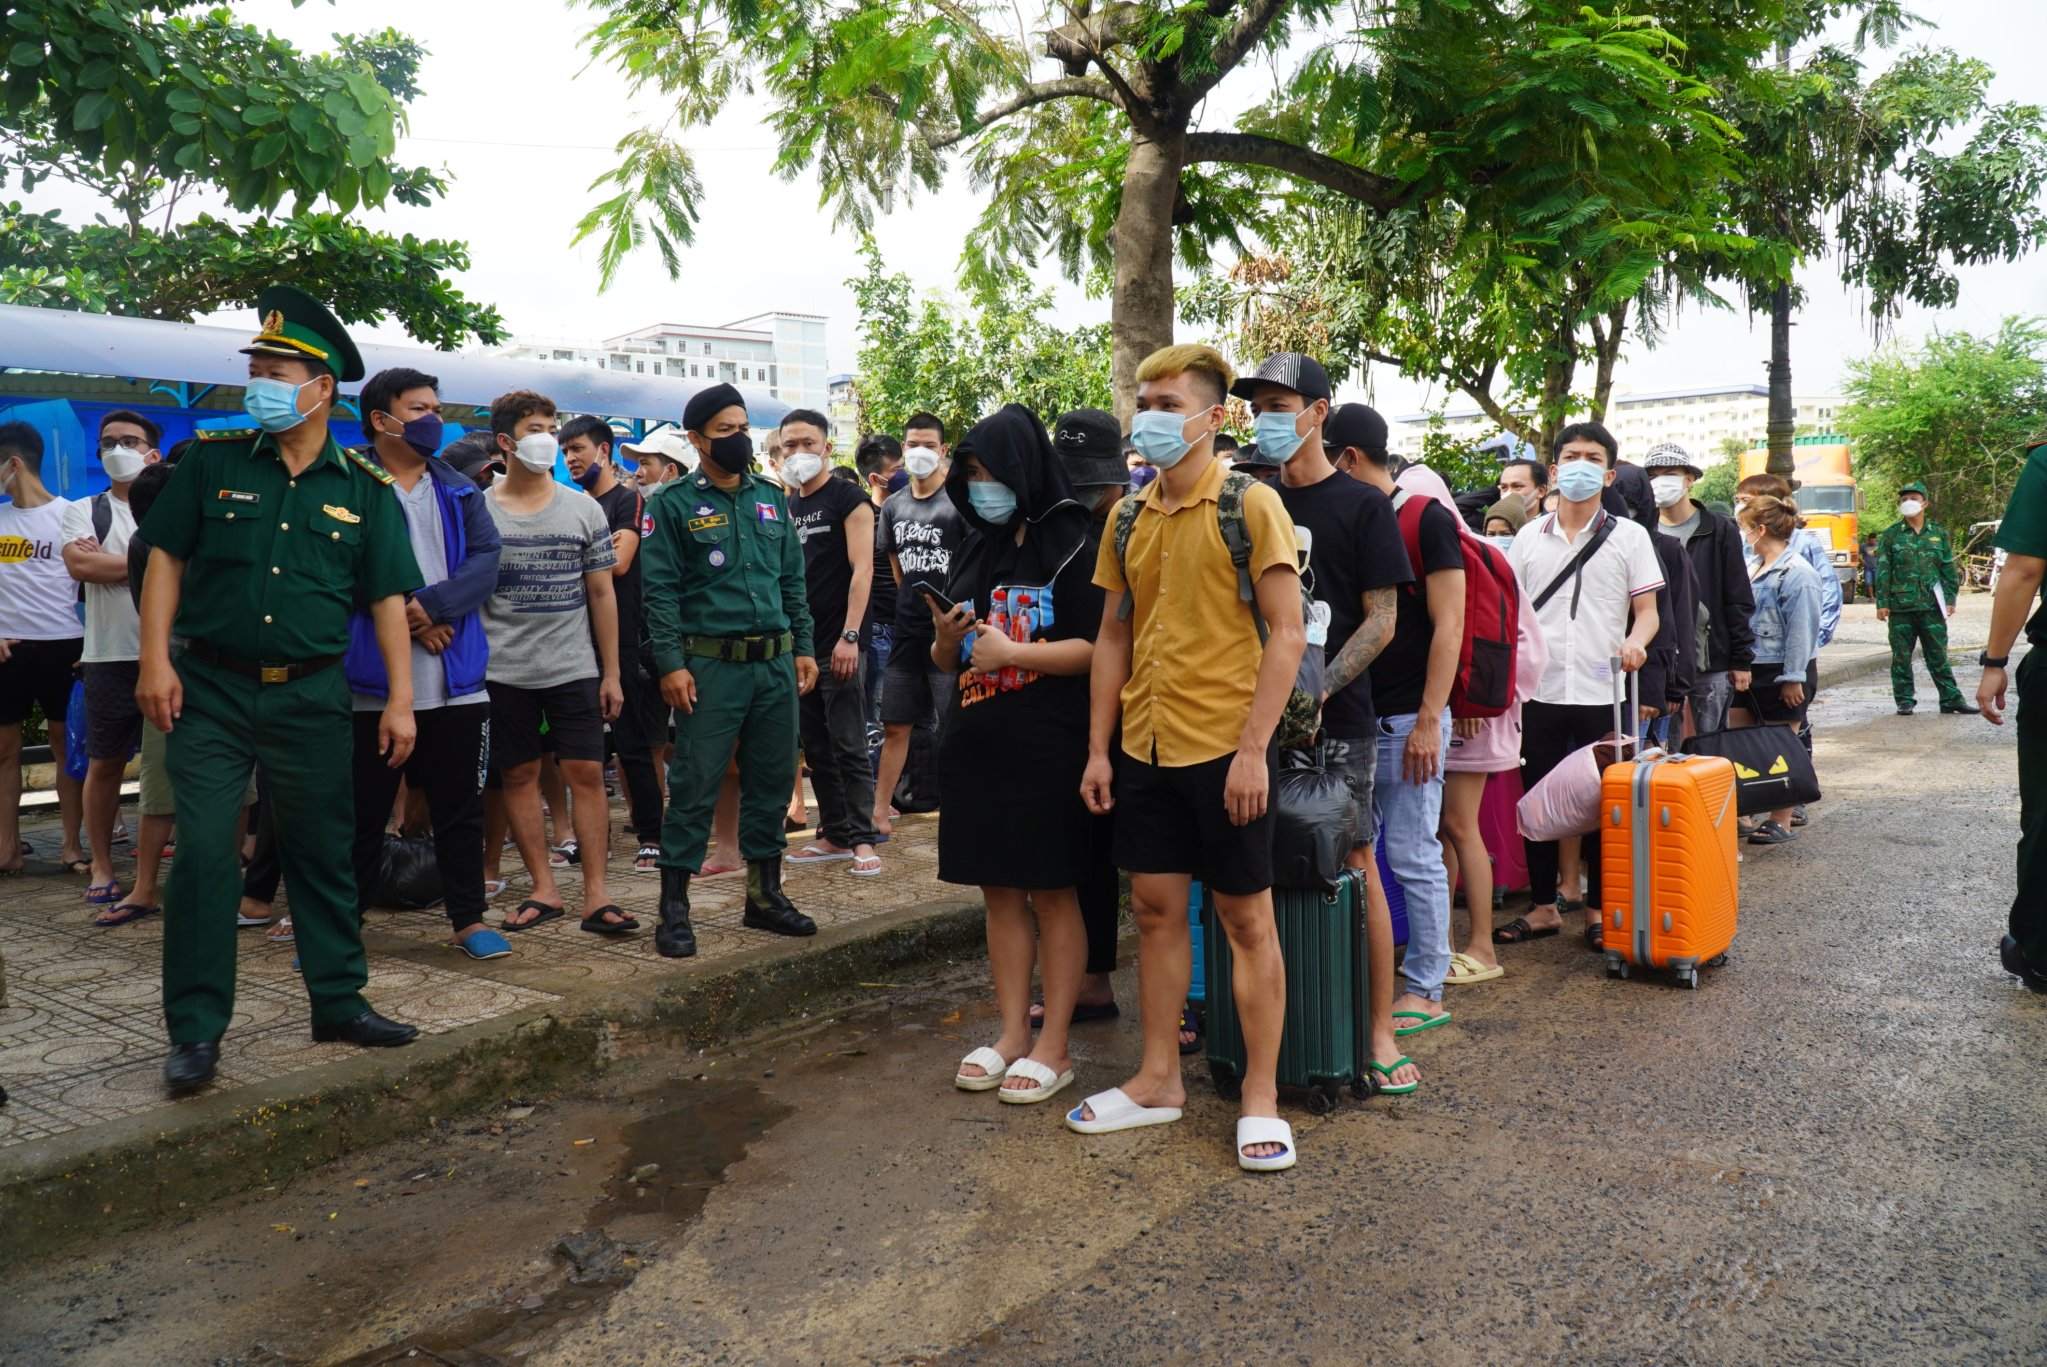 Bộ Chỉ huy BĐBP Tây Ninh đã tổ chức tiếp nhận 92 công dân Việt Nam, trong đó có 71 người trong vụ hàng chục người Việt tháo chạy khỏi casino ở Căm-pu-chia.